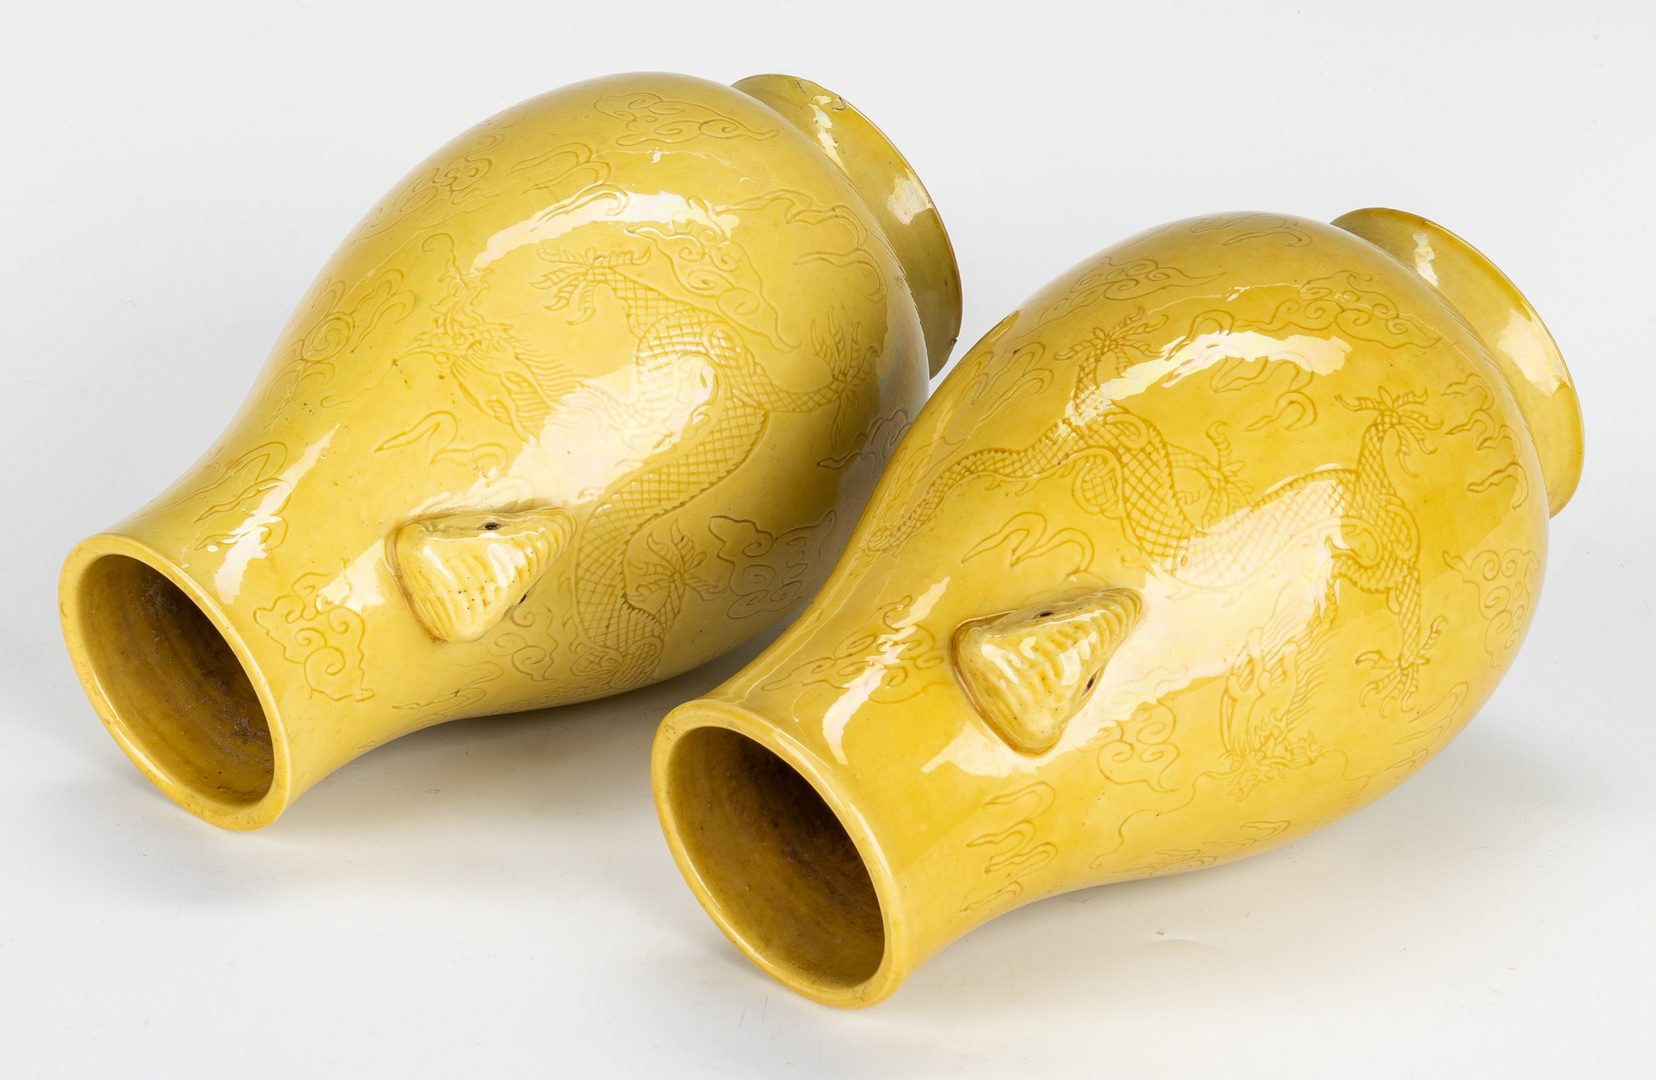 Lot 477: 2 Yellow Glaze Hu Fan Vases